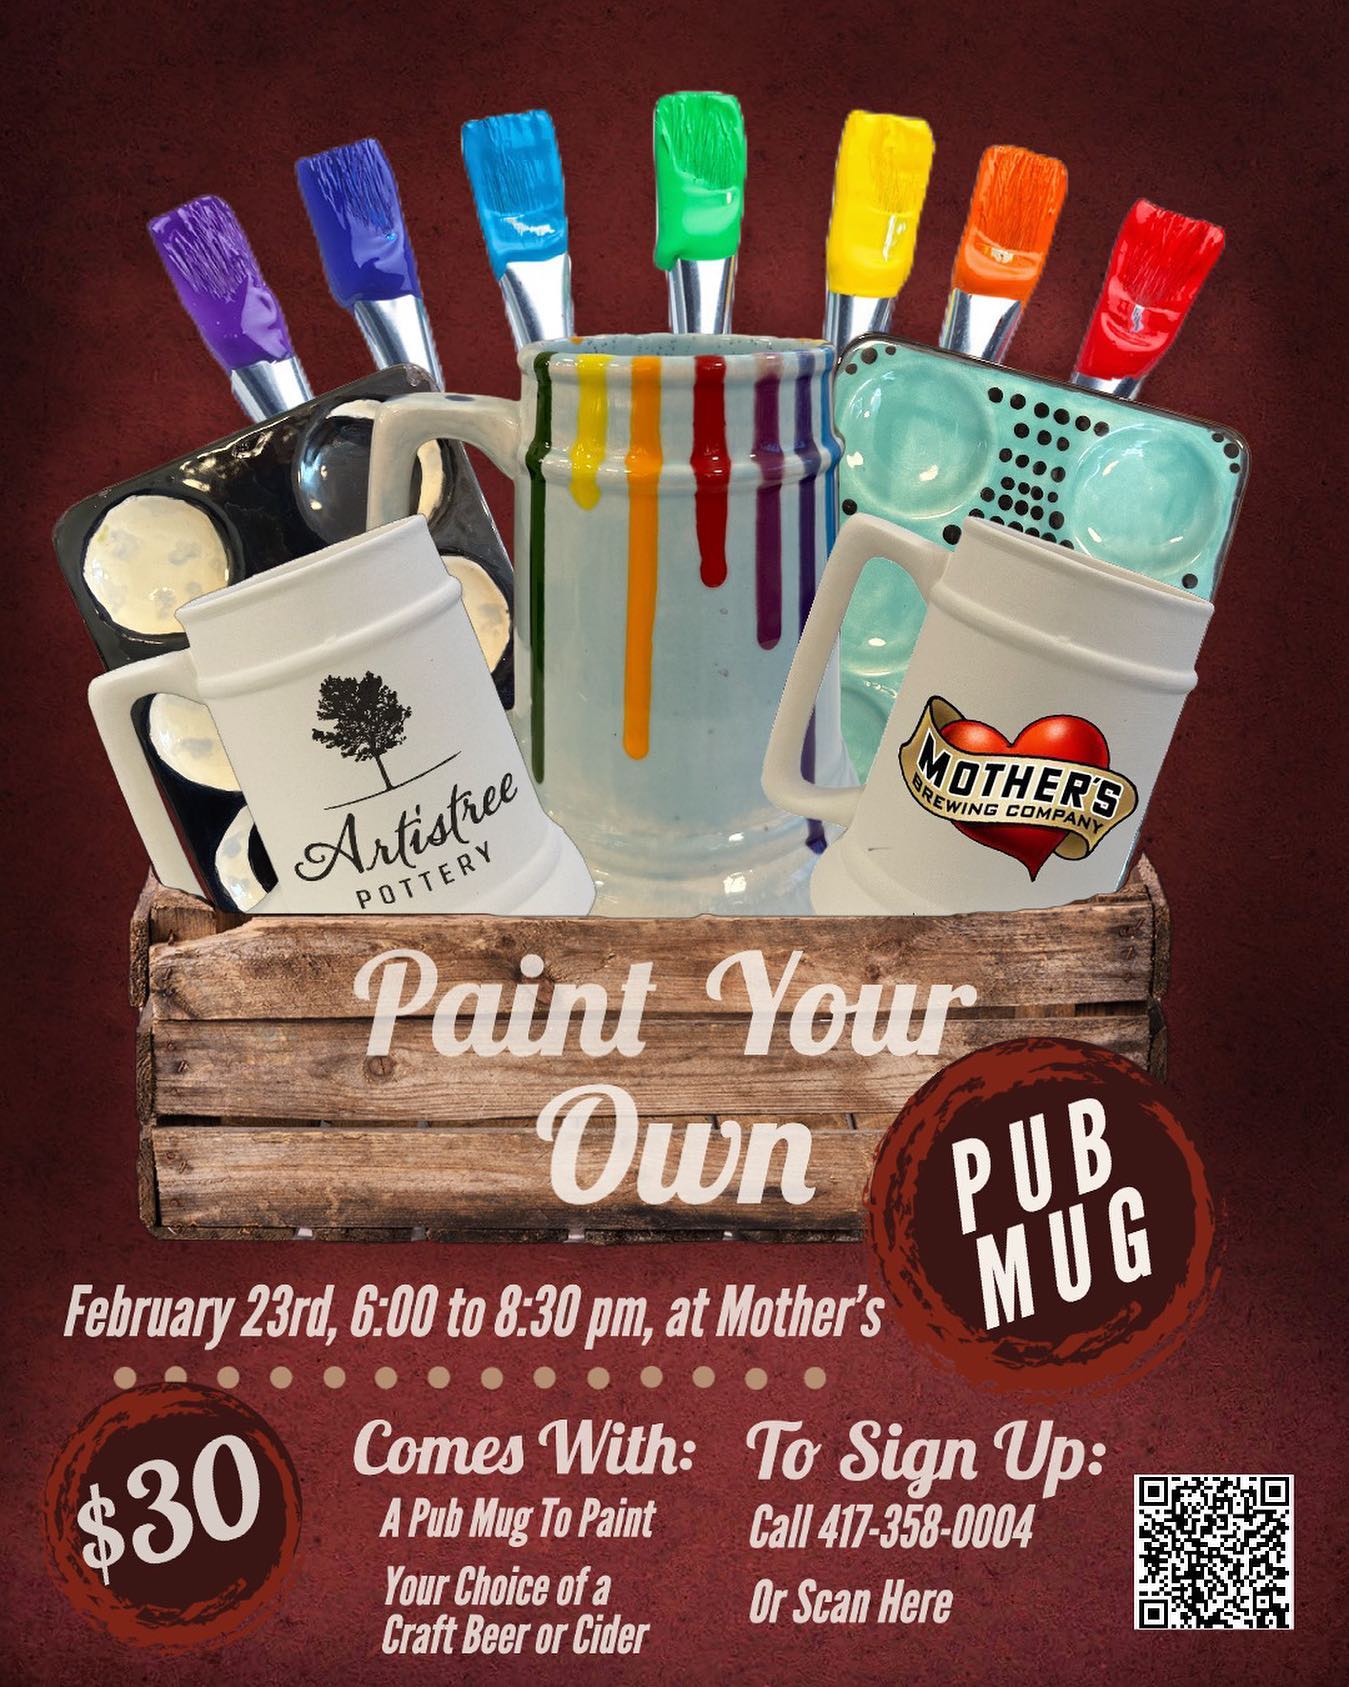 Paint Your Own Pub Mug